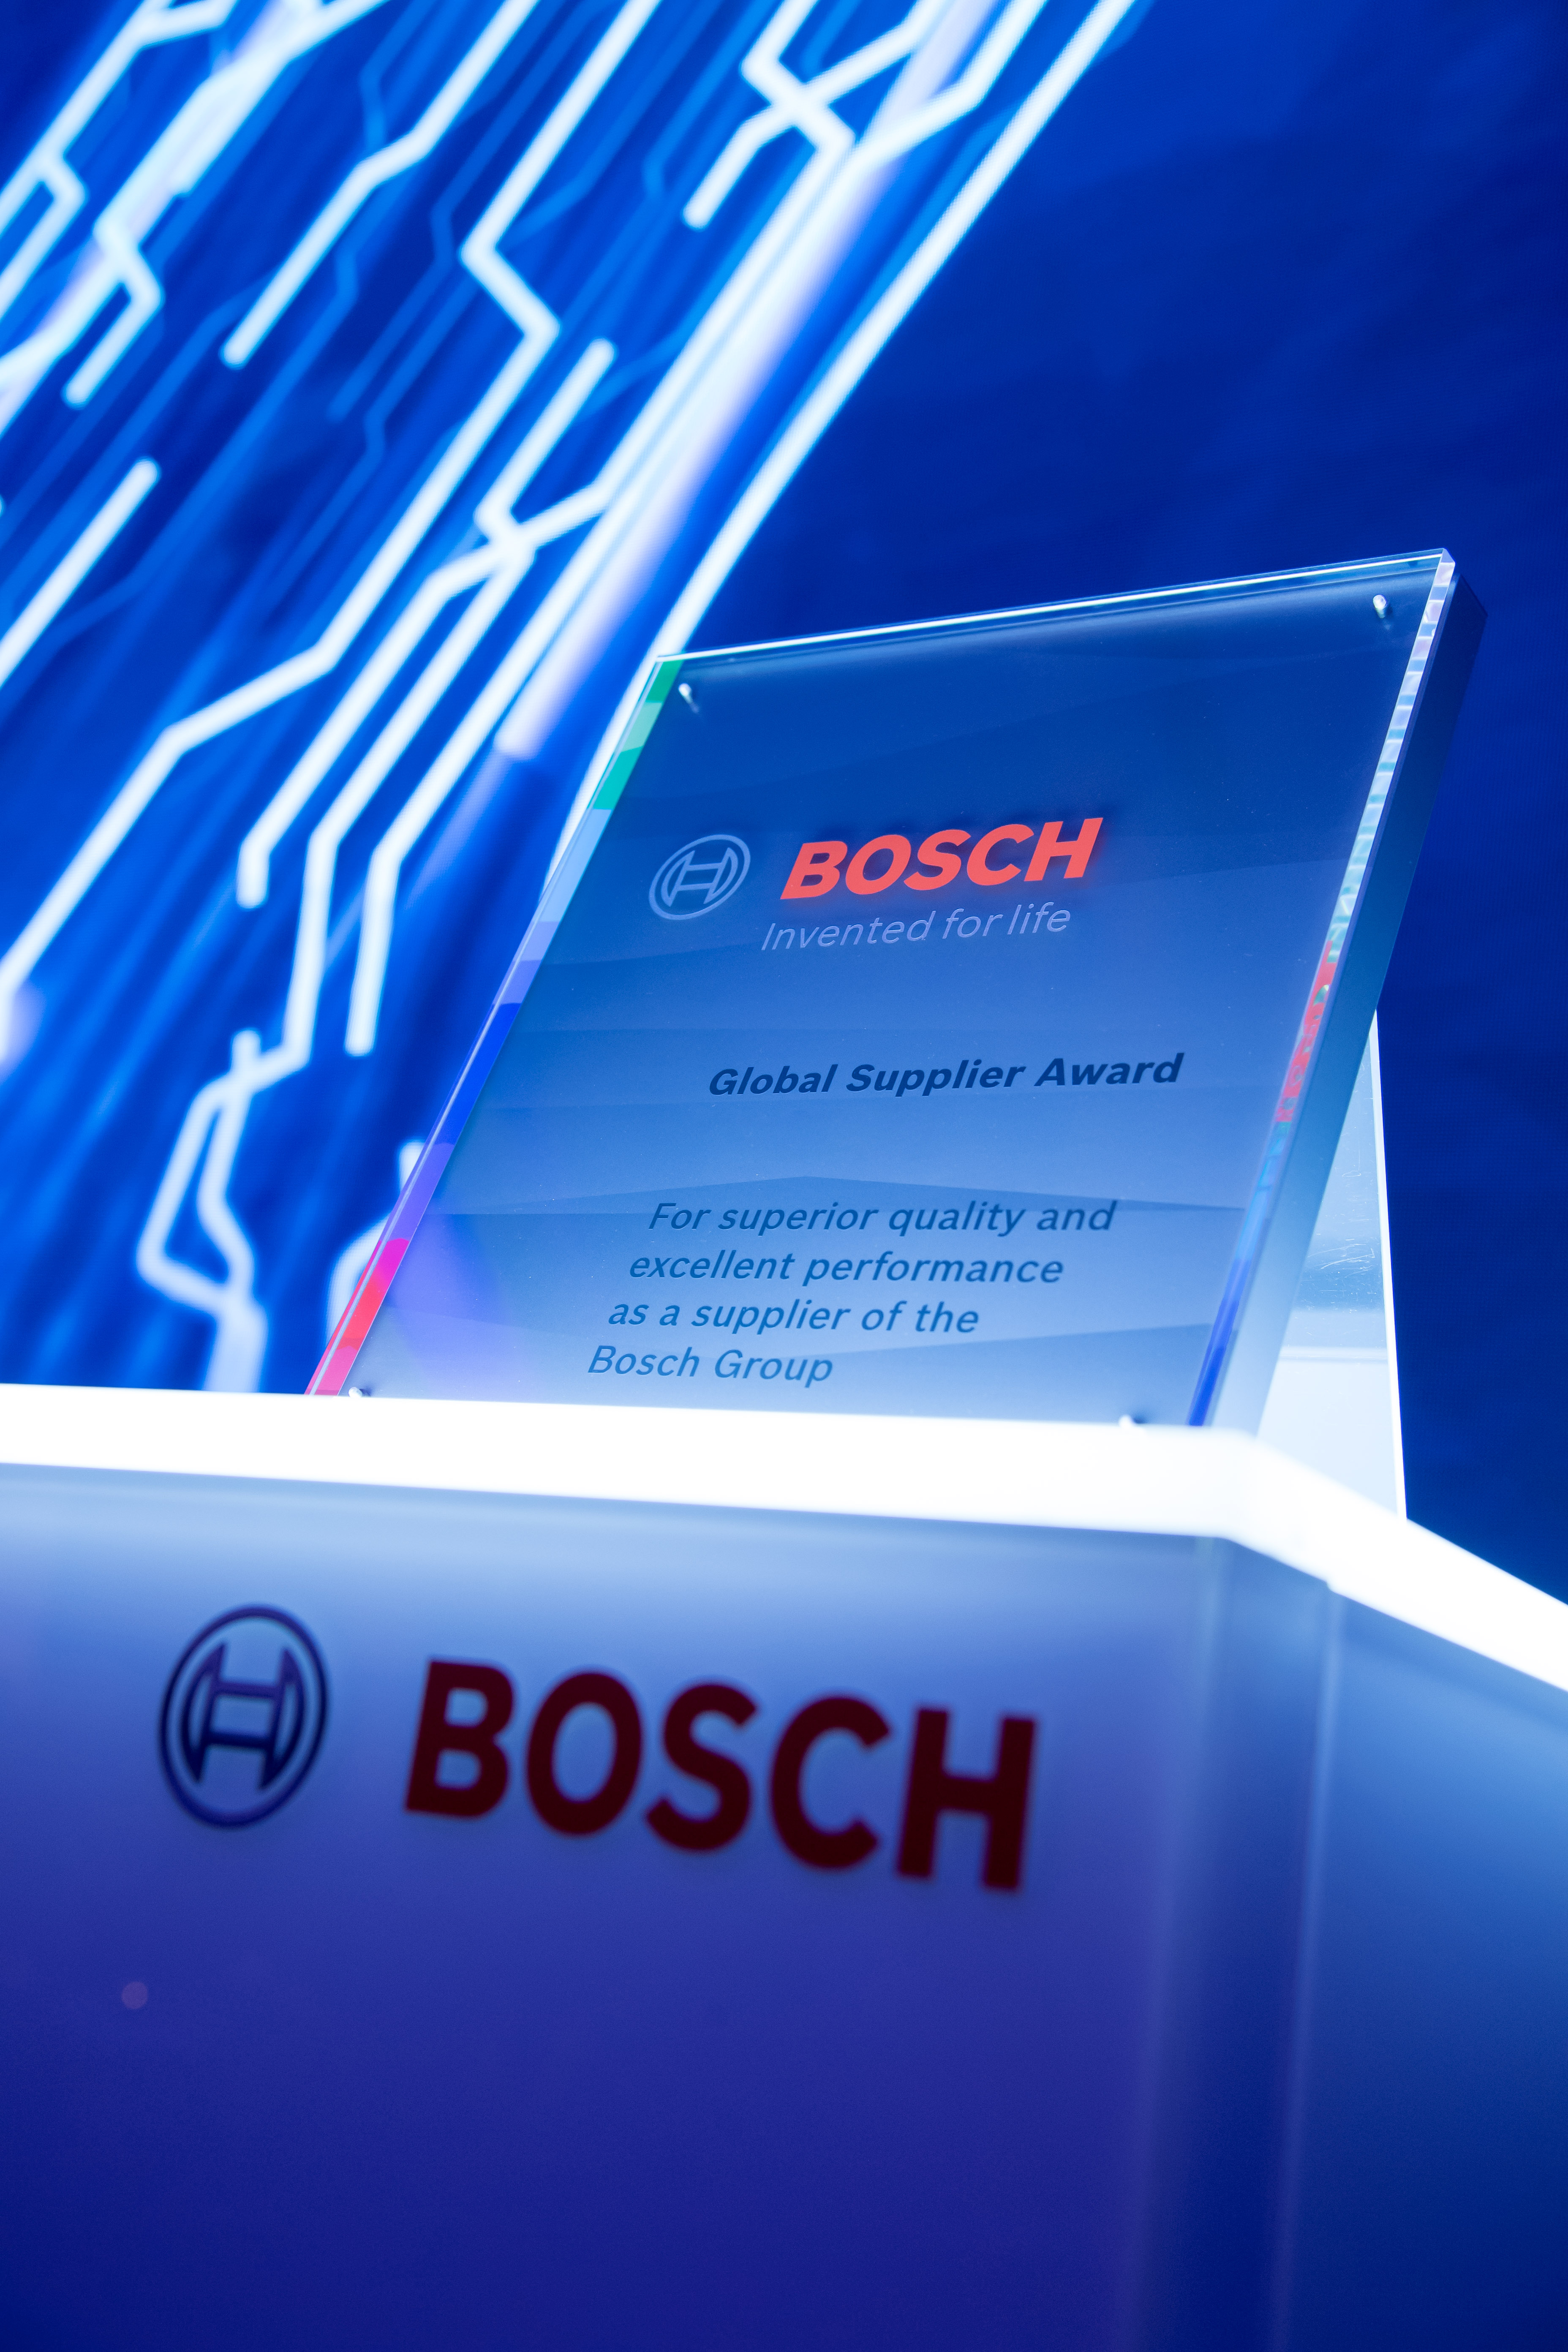 Bosch Global Supplier Award